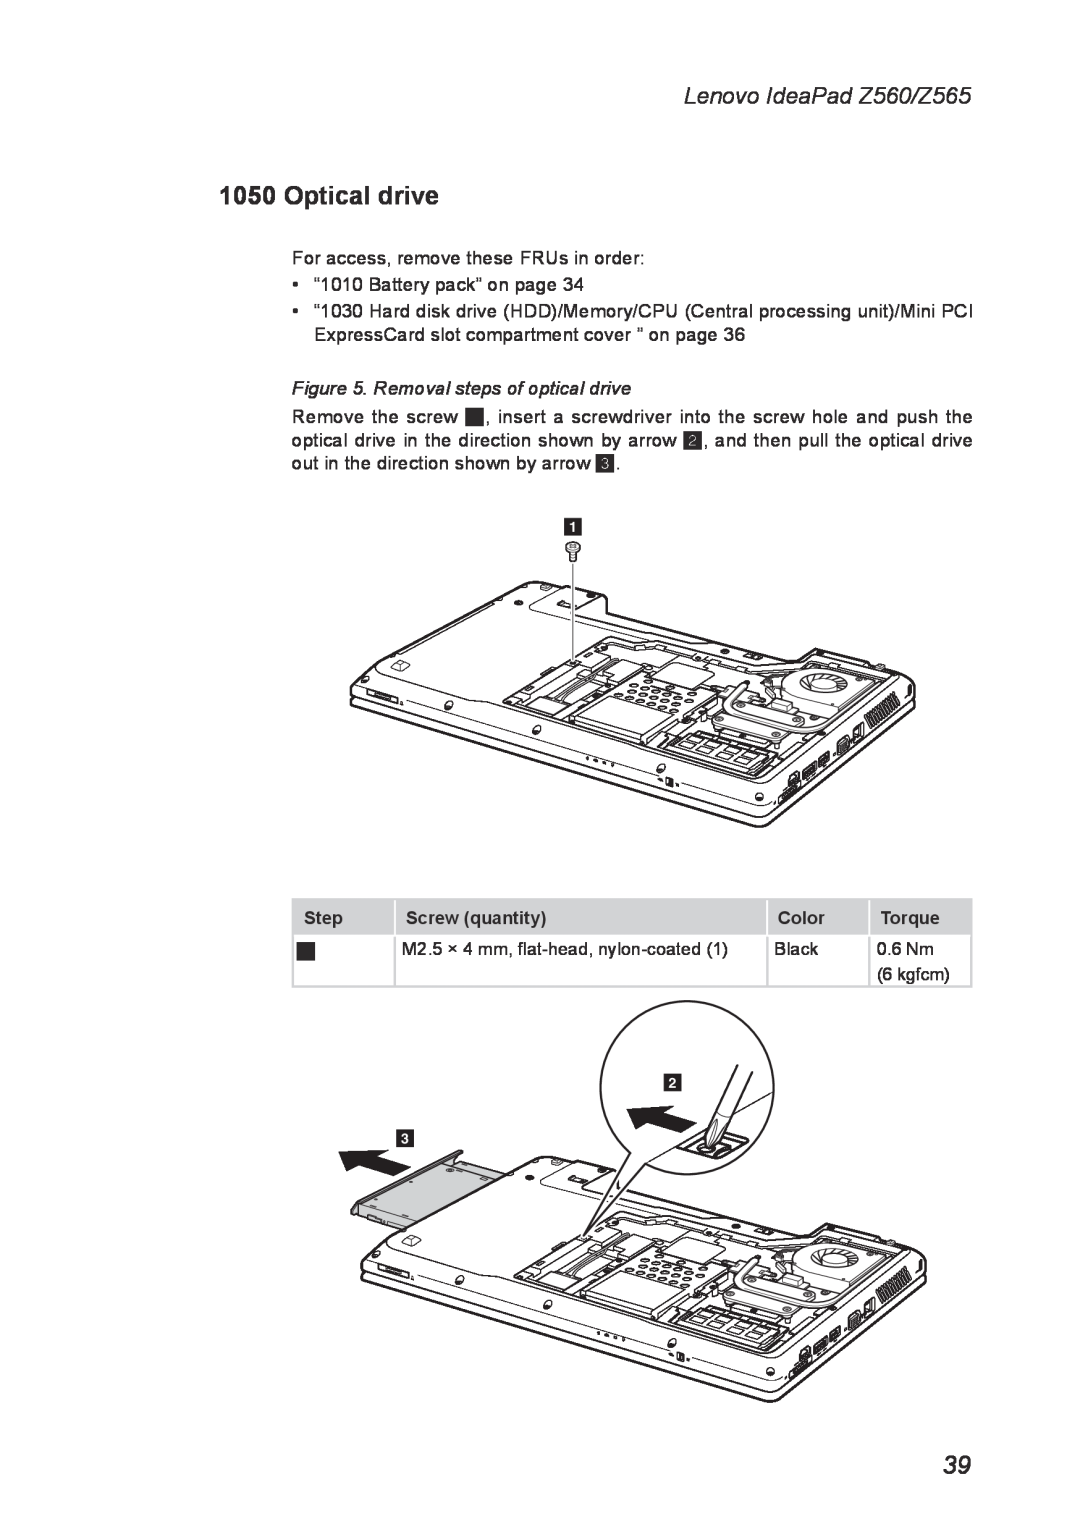 Lenovo manual Optical drive, Removal steps of optical drive, Lenovo IdeaPad Z560/Z565 